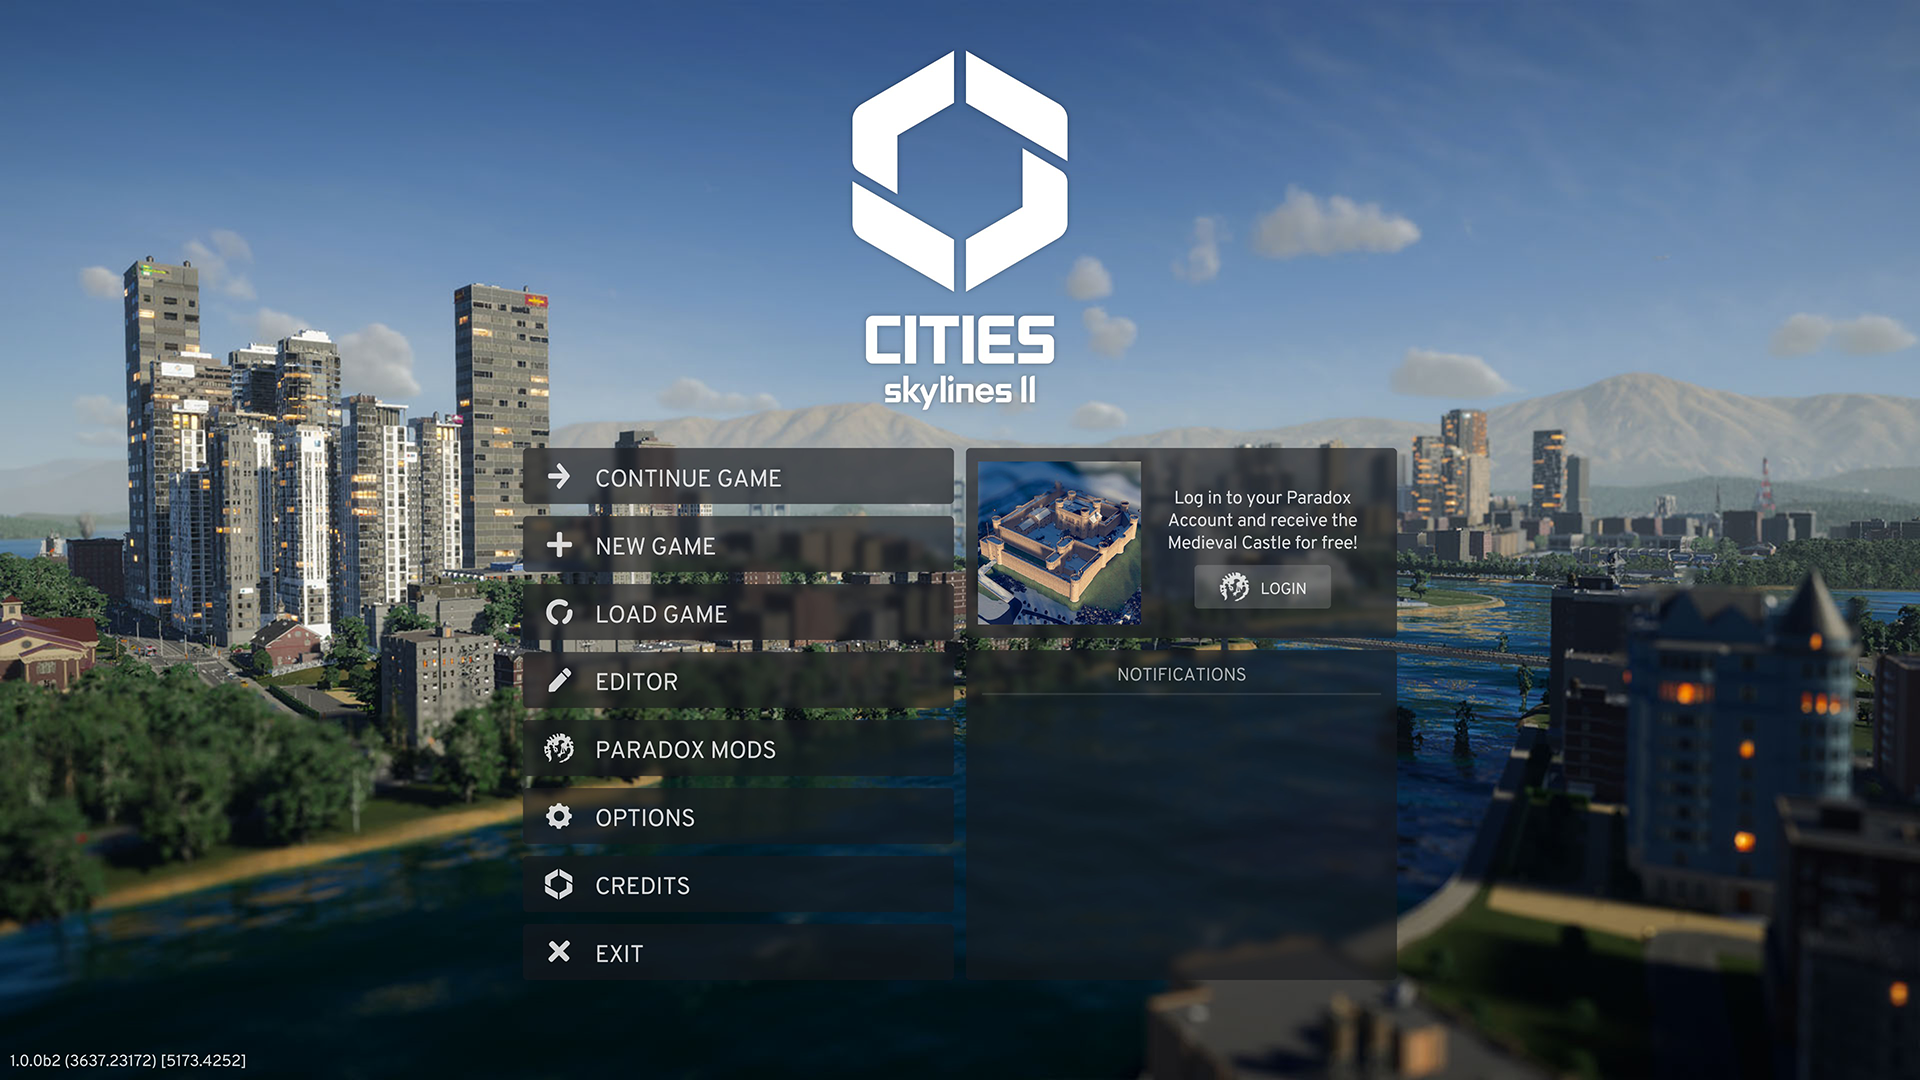 cities-skylines-ii-feature-12-7